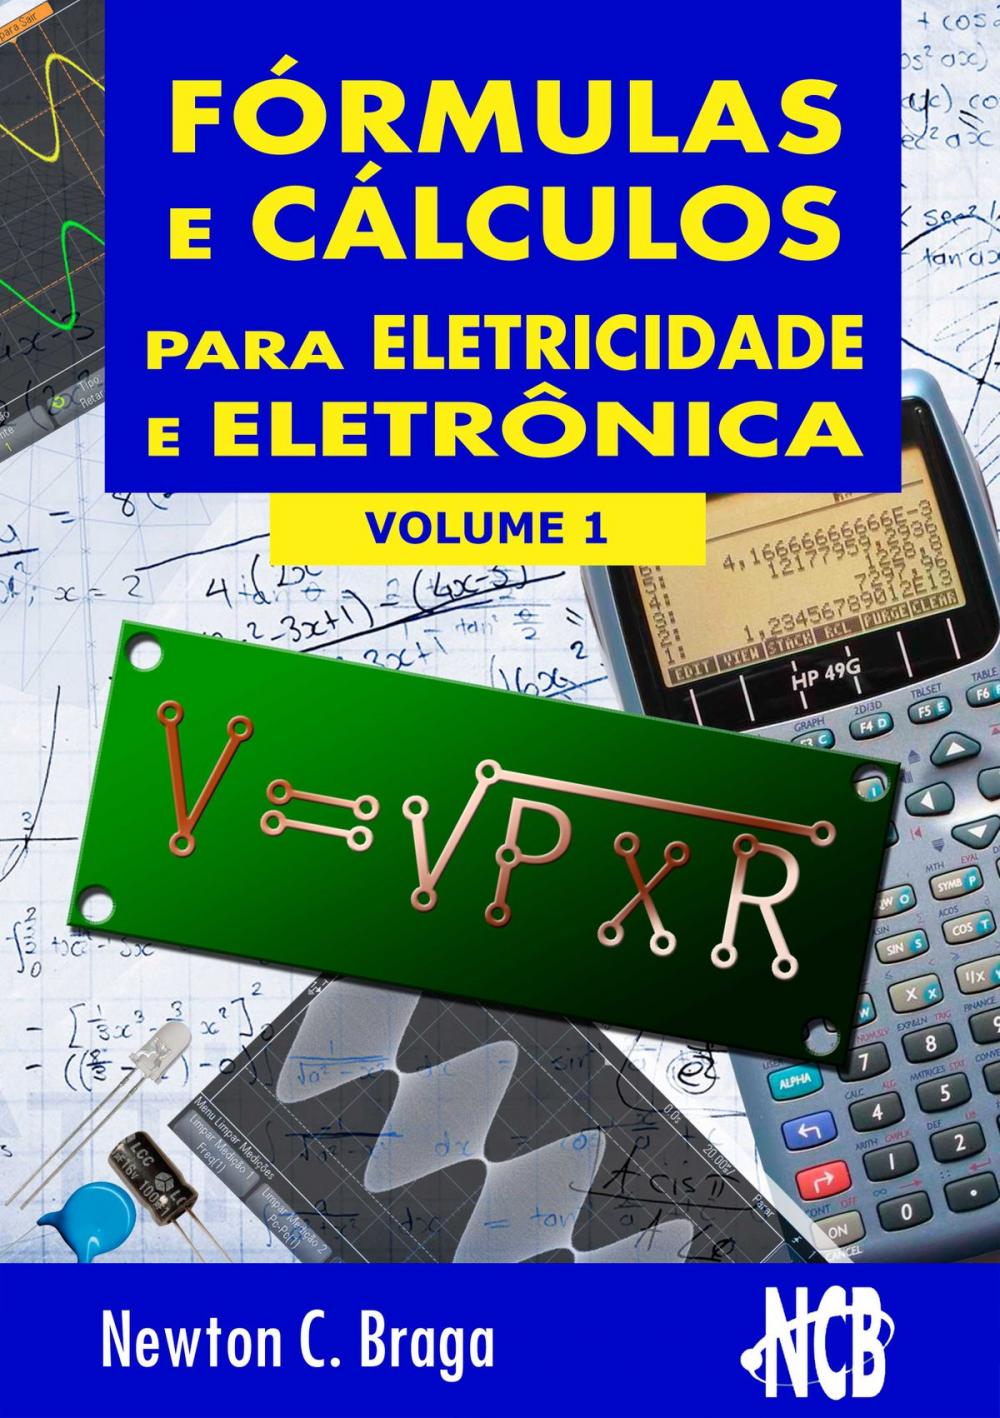 Big bigCover of Fórmulas e Cálculos para Eletricidade e Eletrônica - volume 1